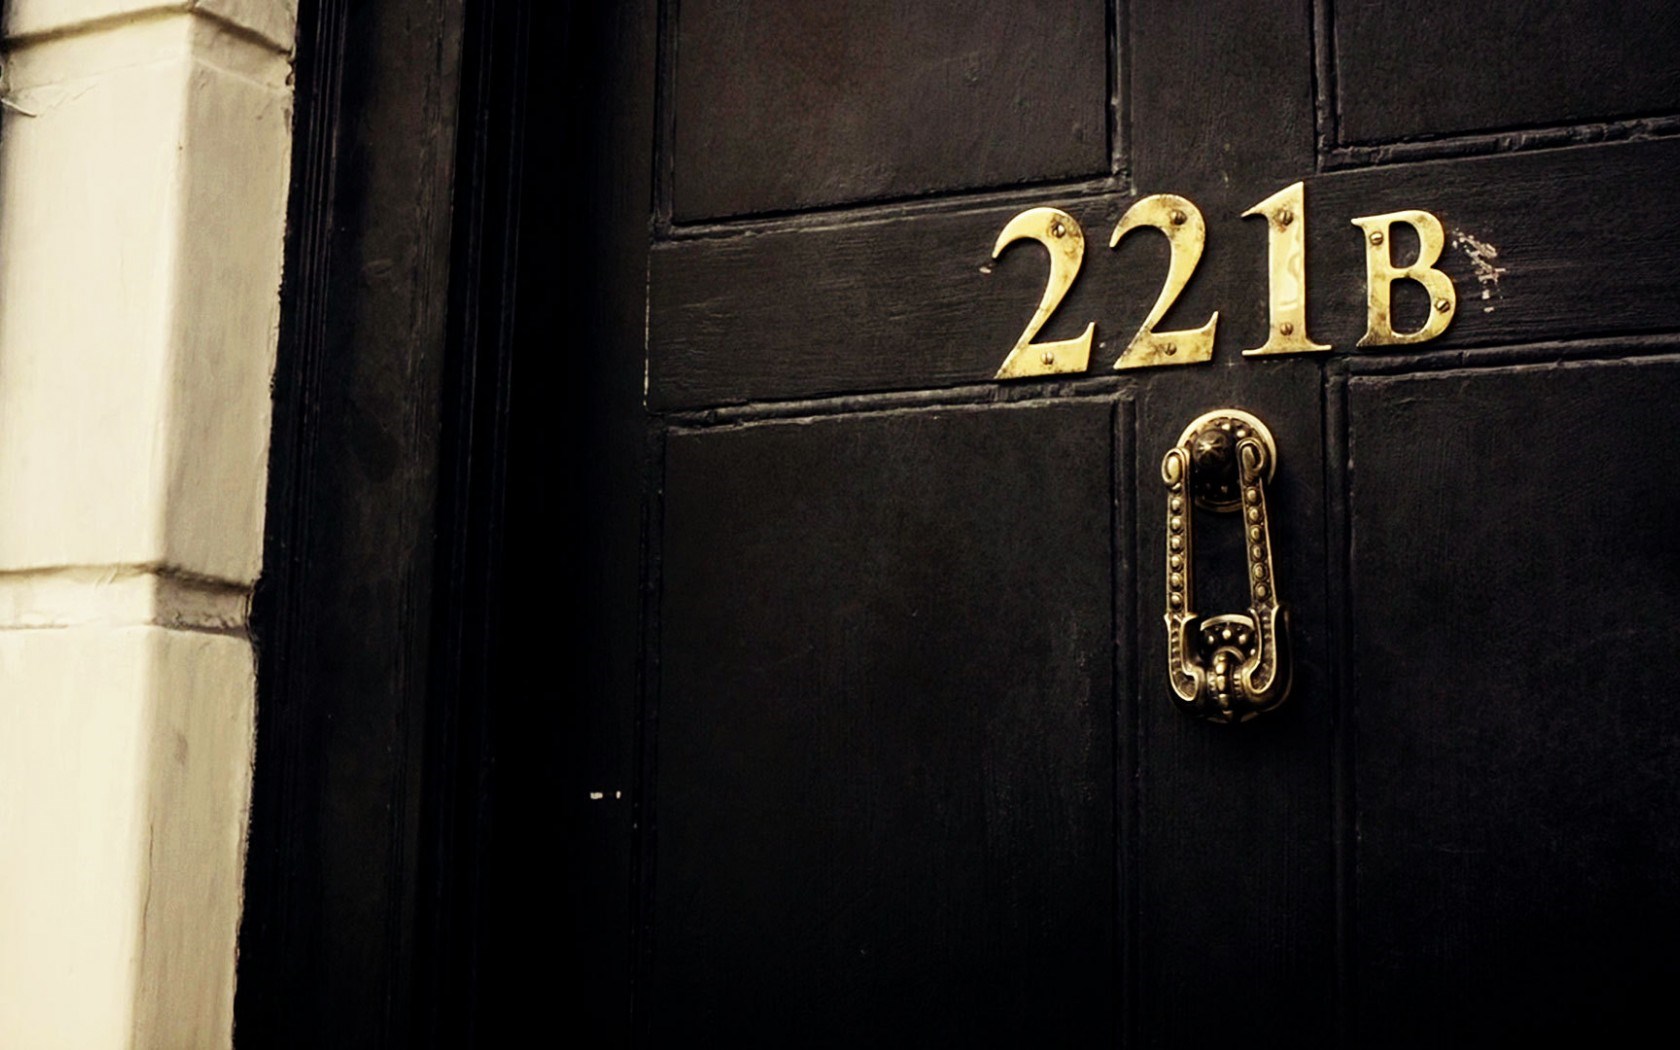 Baker Street 221b